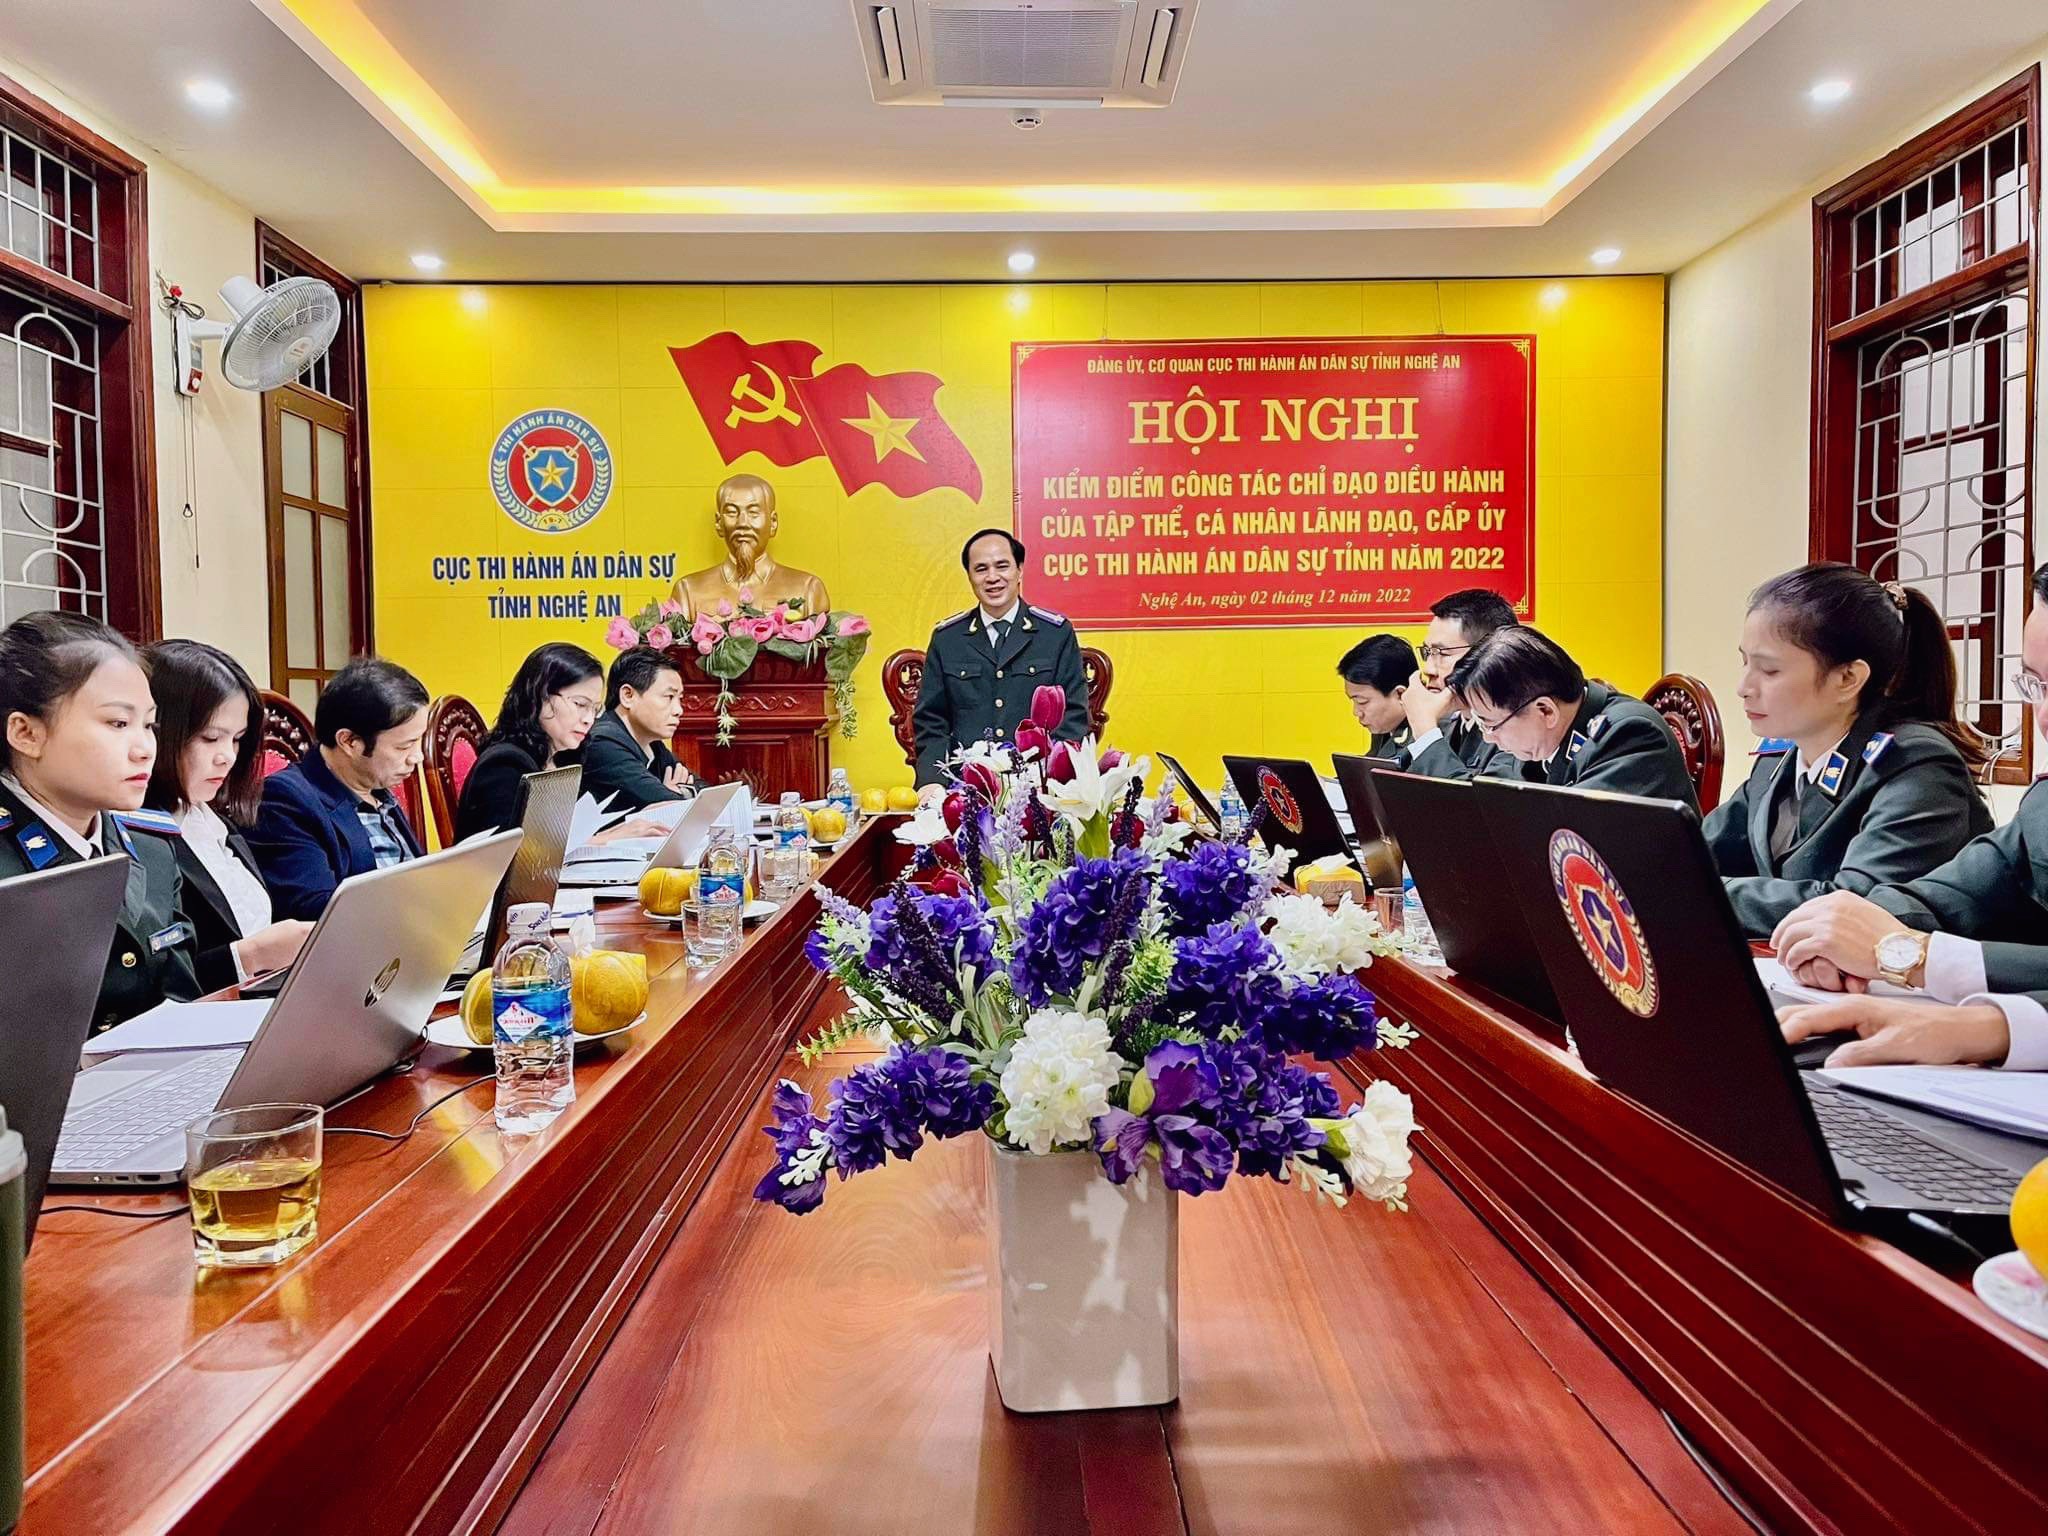 Đảng ủy, Cơ quan Cục Thi hành án dân sự tỉnh Nghệ An tổ chức Hội nghị kiểm điểm công tác chỉ đạo điều hành của tập thể, cá nhân lãnh đạo, cấp ủy Cục Thi hành án dân sự tỉnh Nghệ An